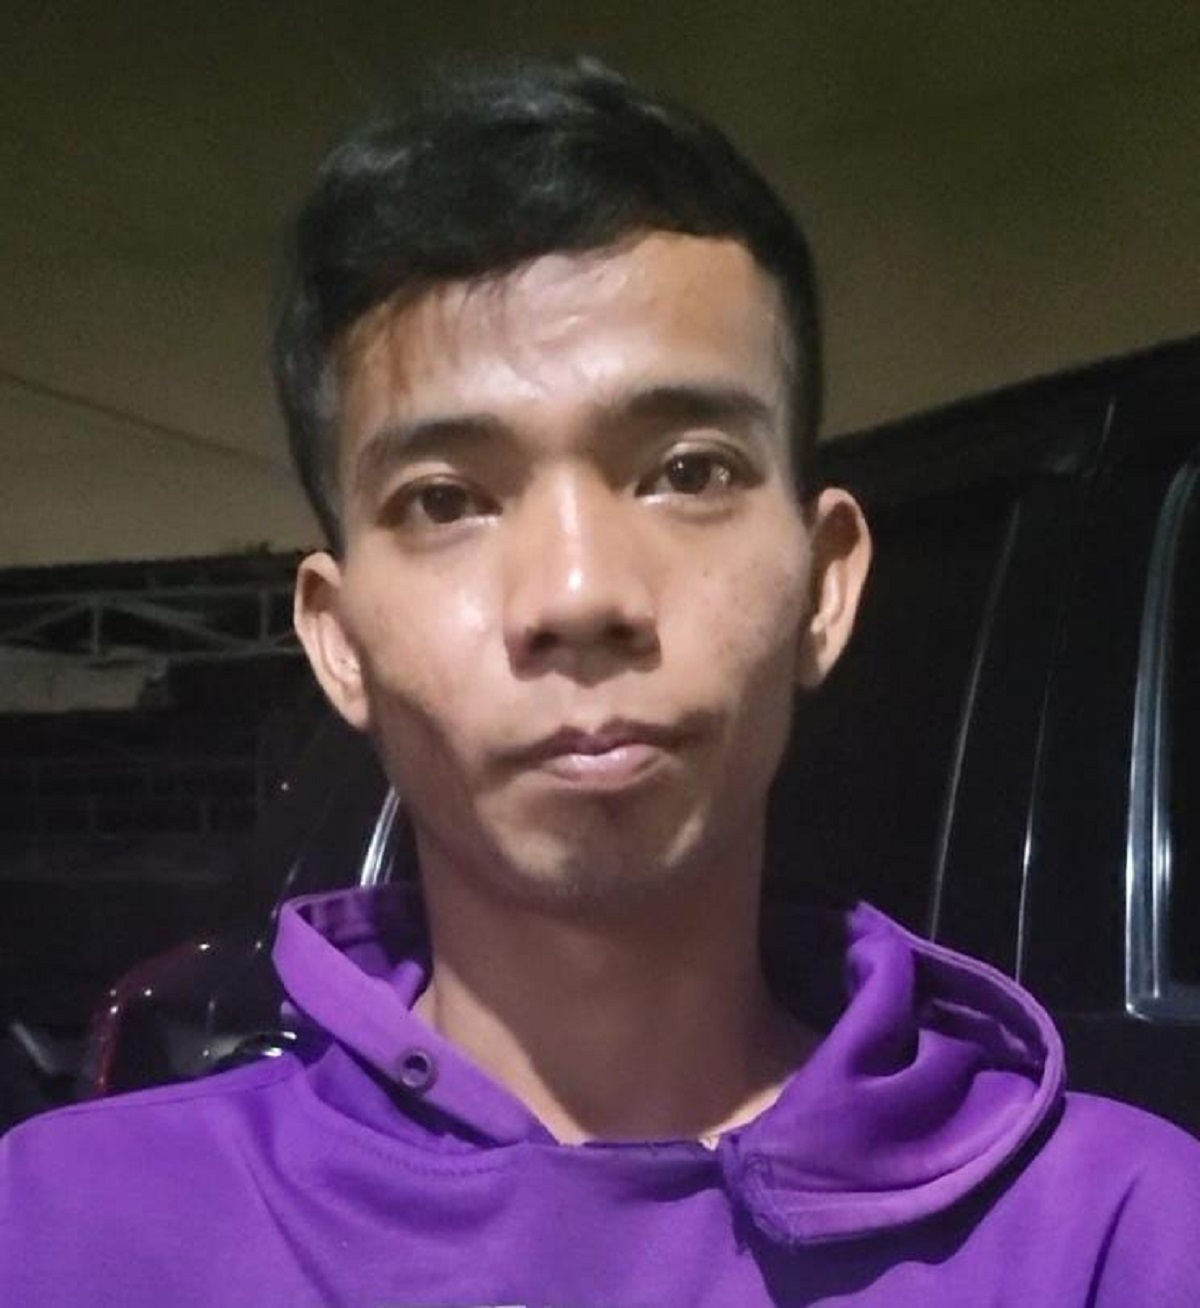 Ditangkap Polisi, Ini Tampang Pelaku Pembunuhan Tukang Ojek di Pasar Induk Palembang